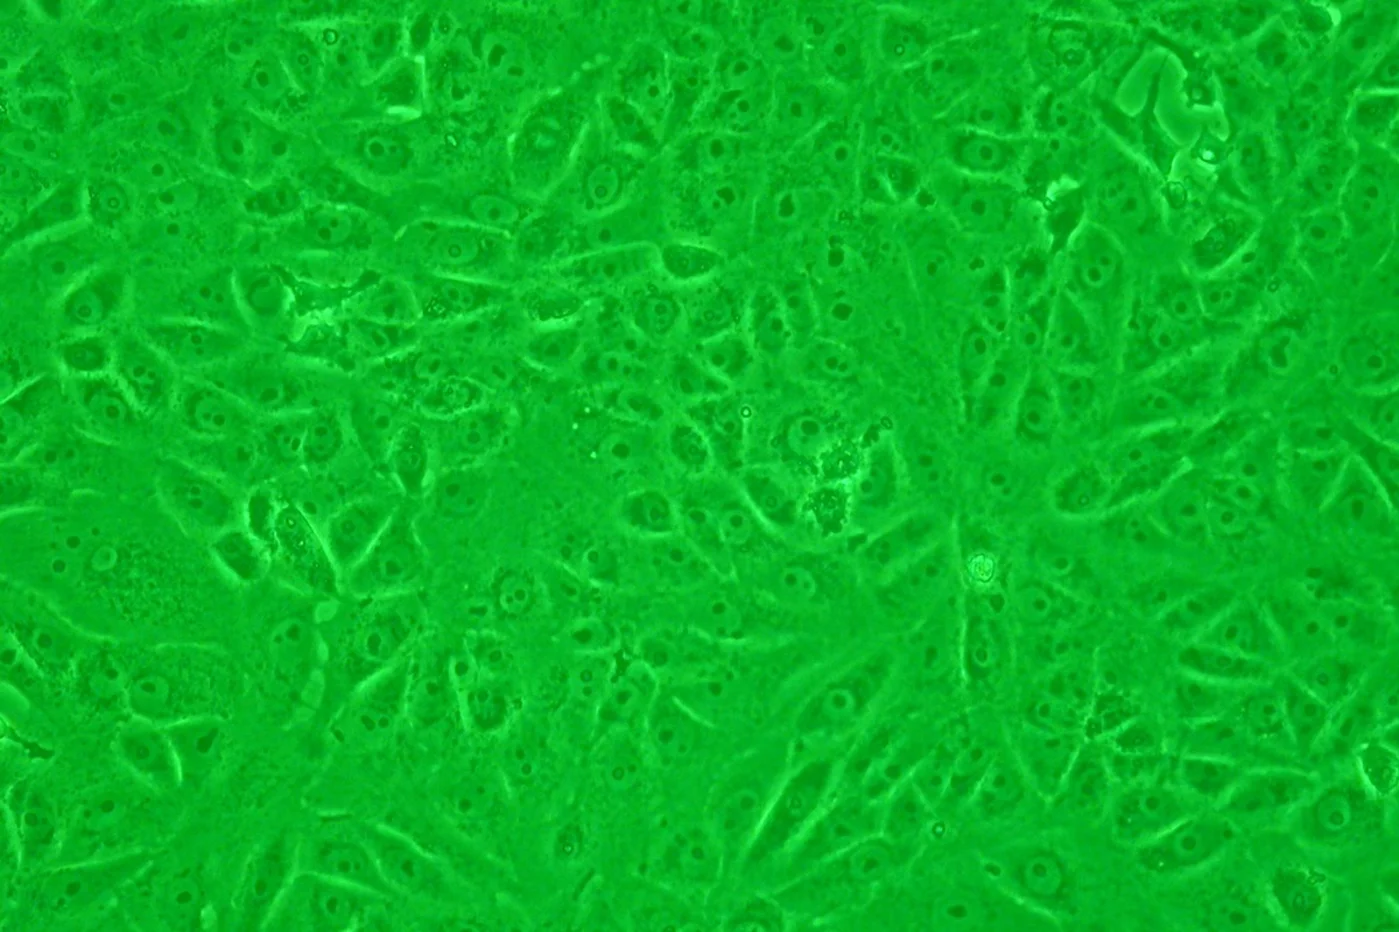 Las células Vero constituyen una de las estirpes celulares continuas de mamífero más empleadas en las investigaciones microbiológicas y de biología molecular y celular.